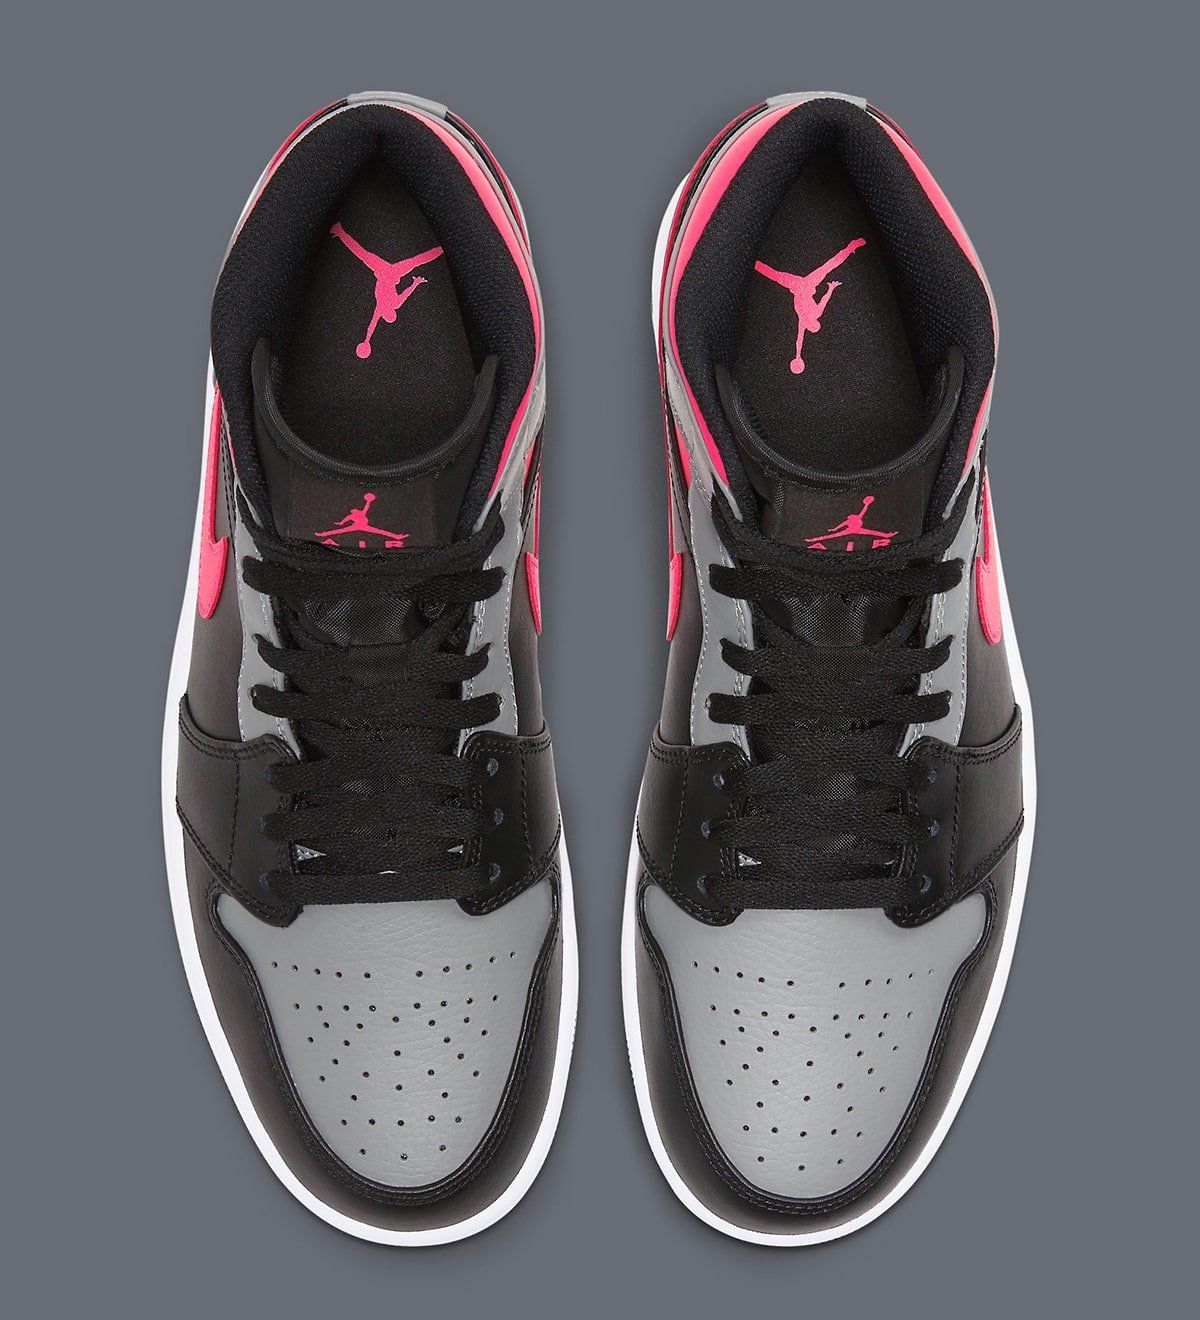 Air Jordan 1 Mid "Pink Shadow" Appears! | HOUSE OF HEAT